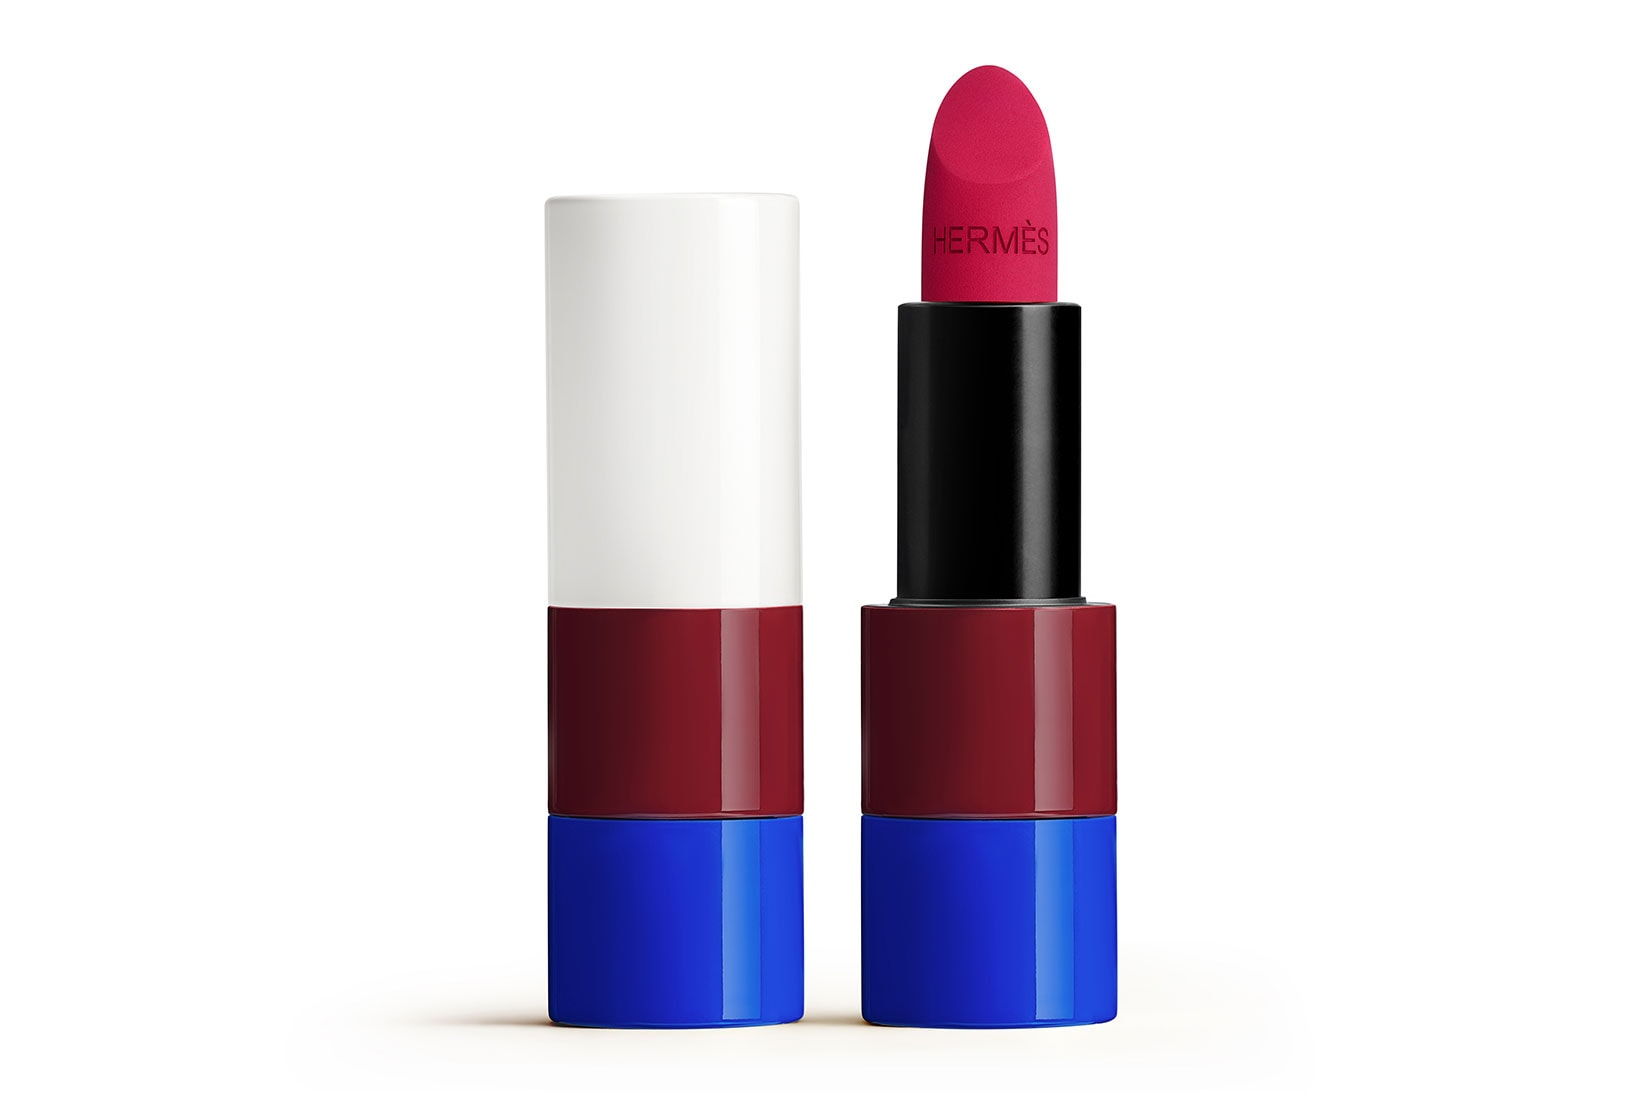 Hermes Beauty Lipsticks FW21 Rose Magenta